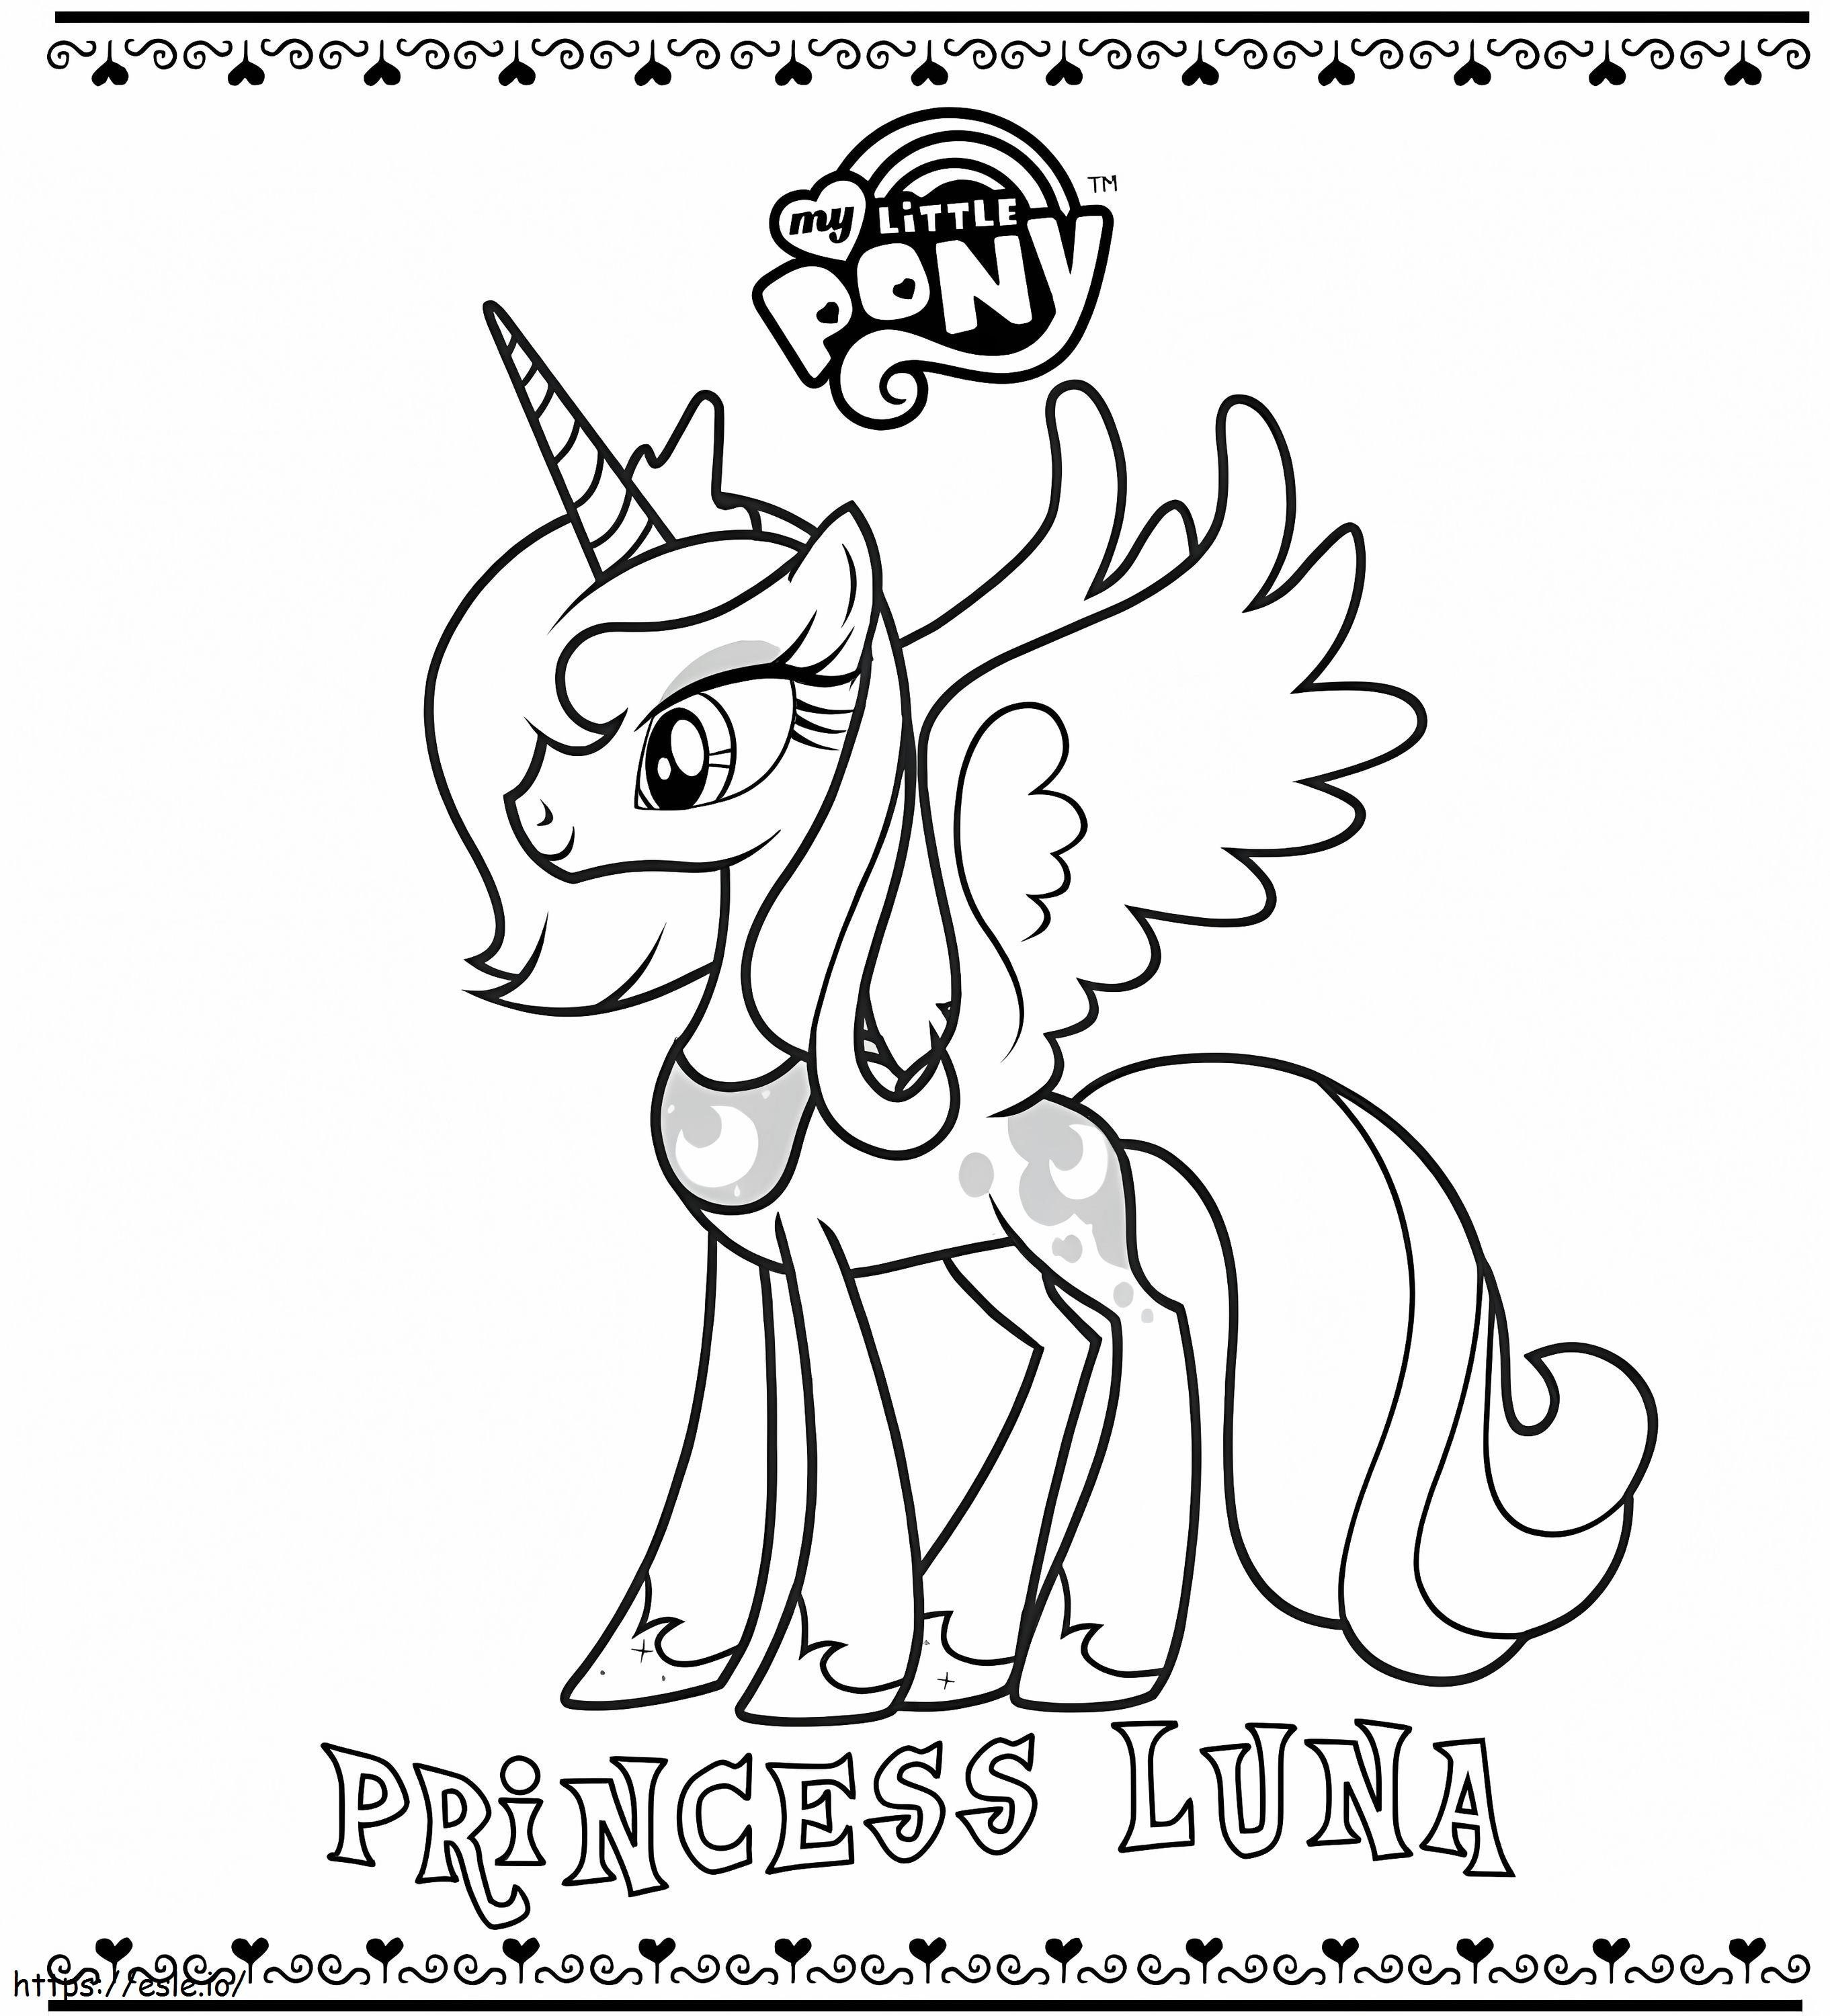 Işıldayan Prenses Luna boyama